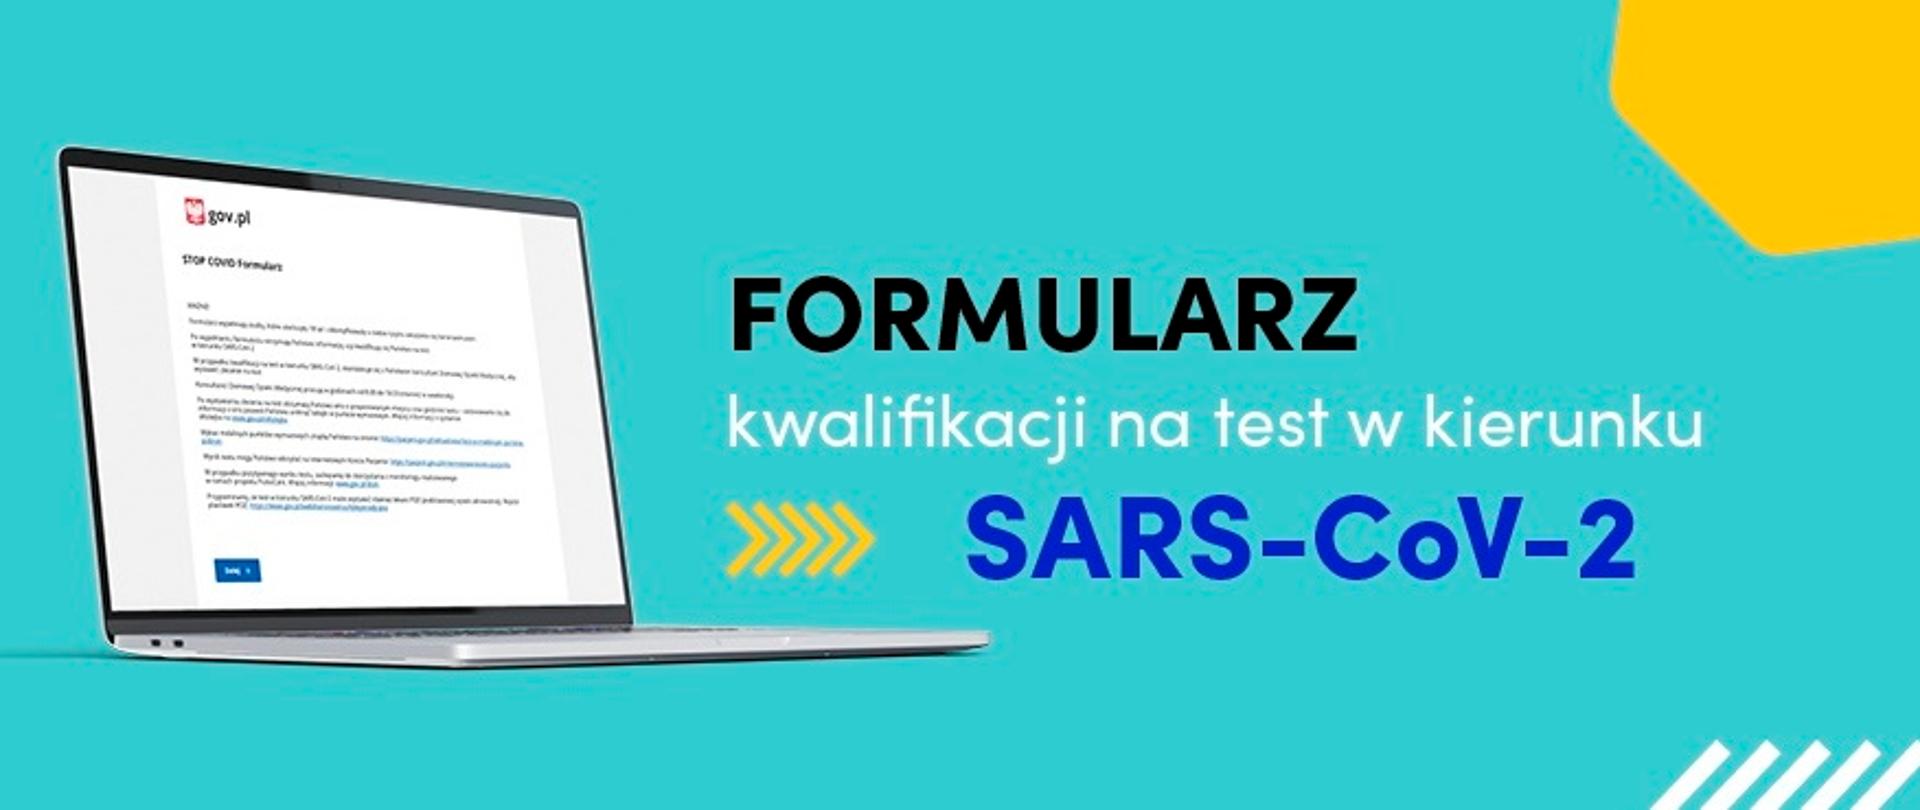 Na obrazku widać laptop z wczytaną stroną internetową gov.pl i tekst formularz kwalifikacji na test w kierunku SARS-CoV-2